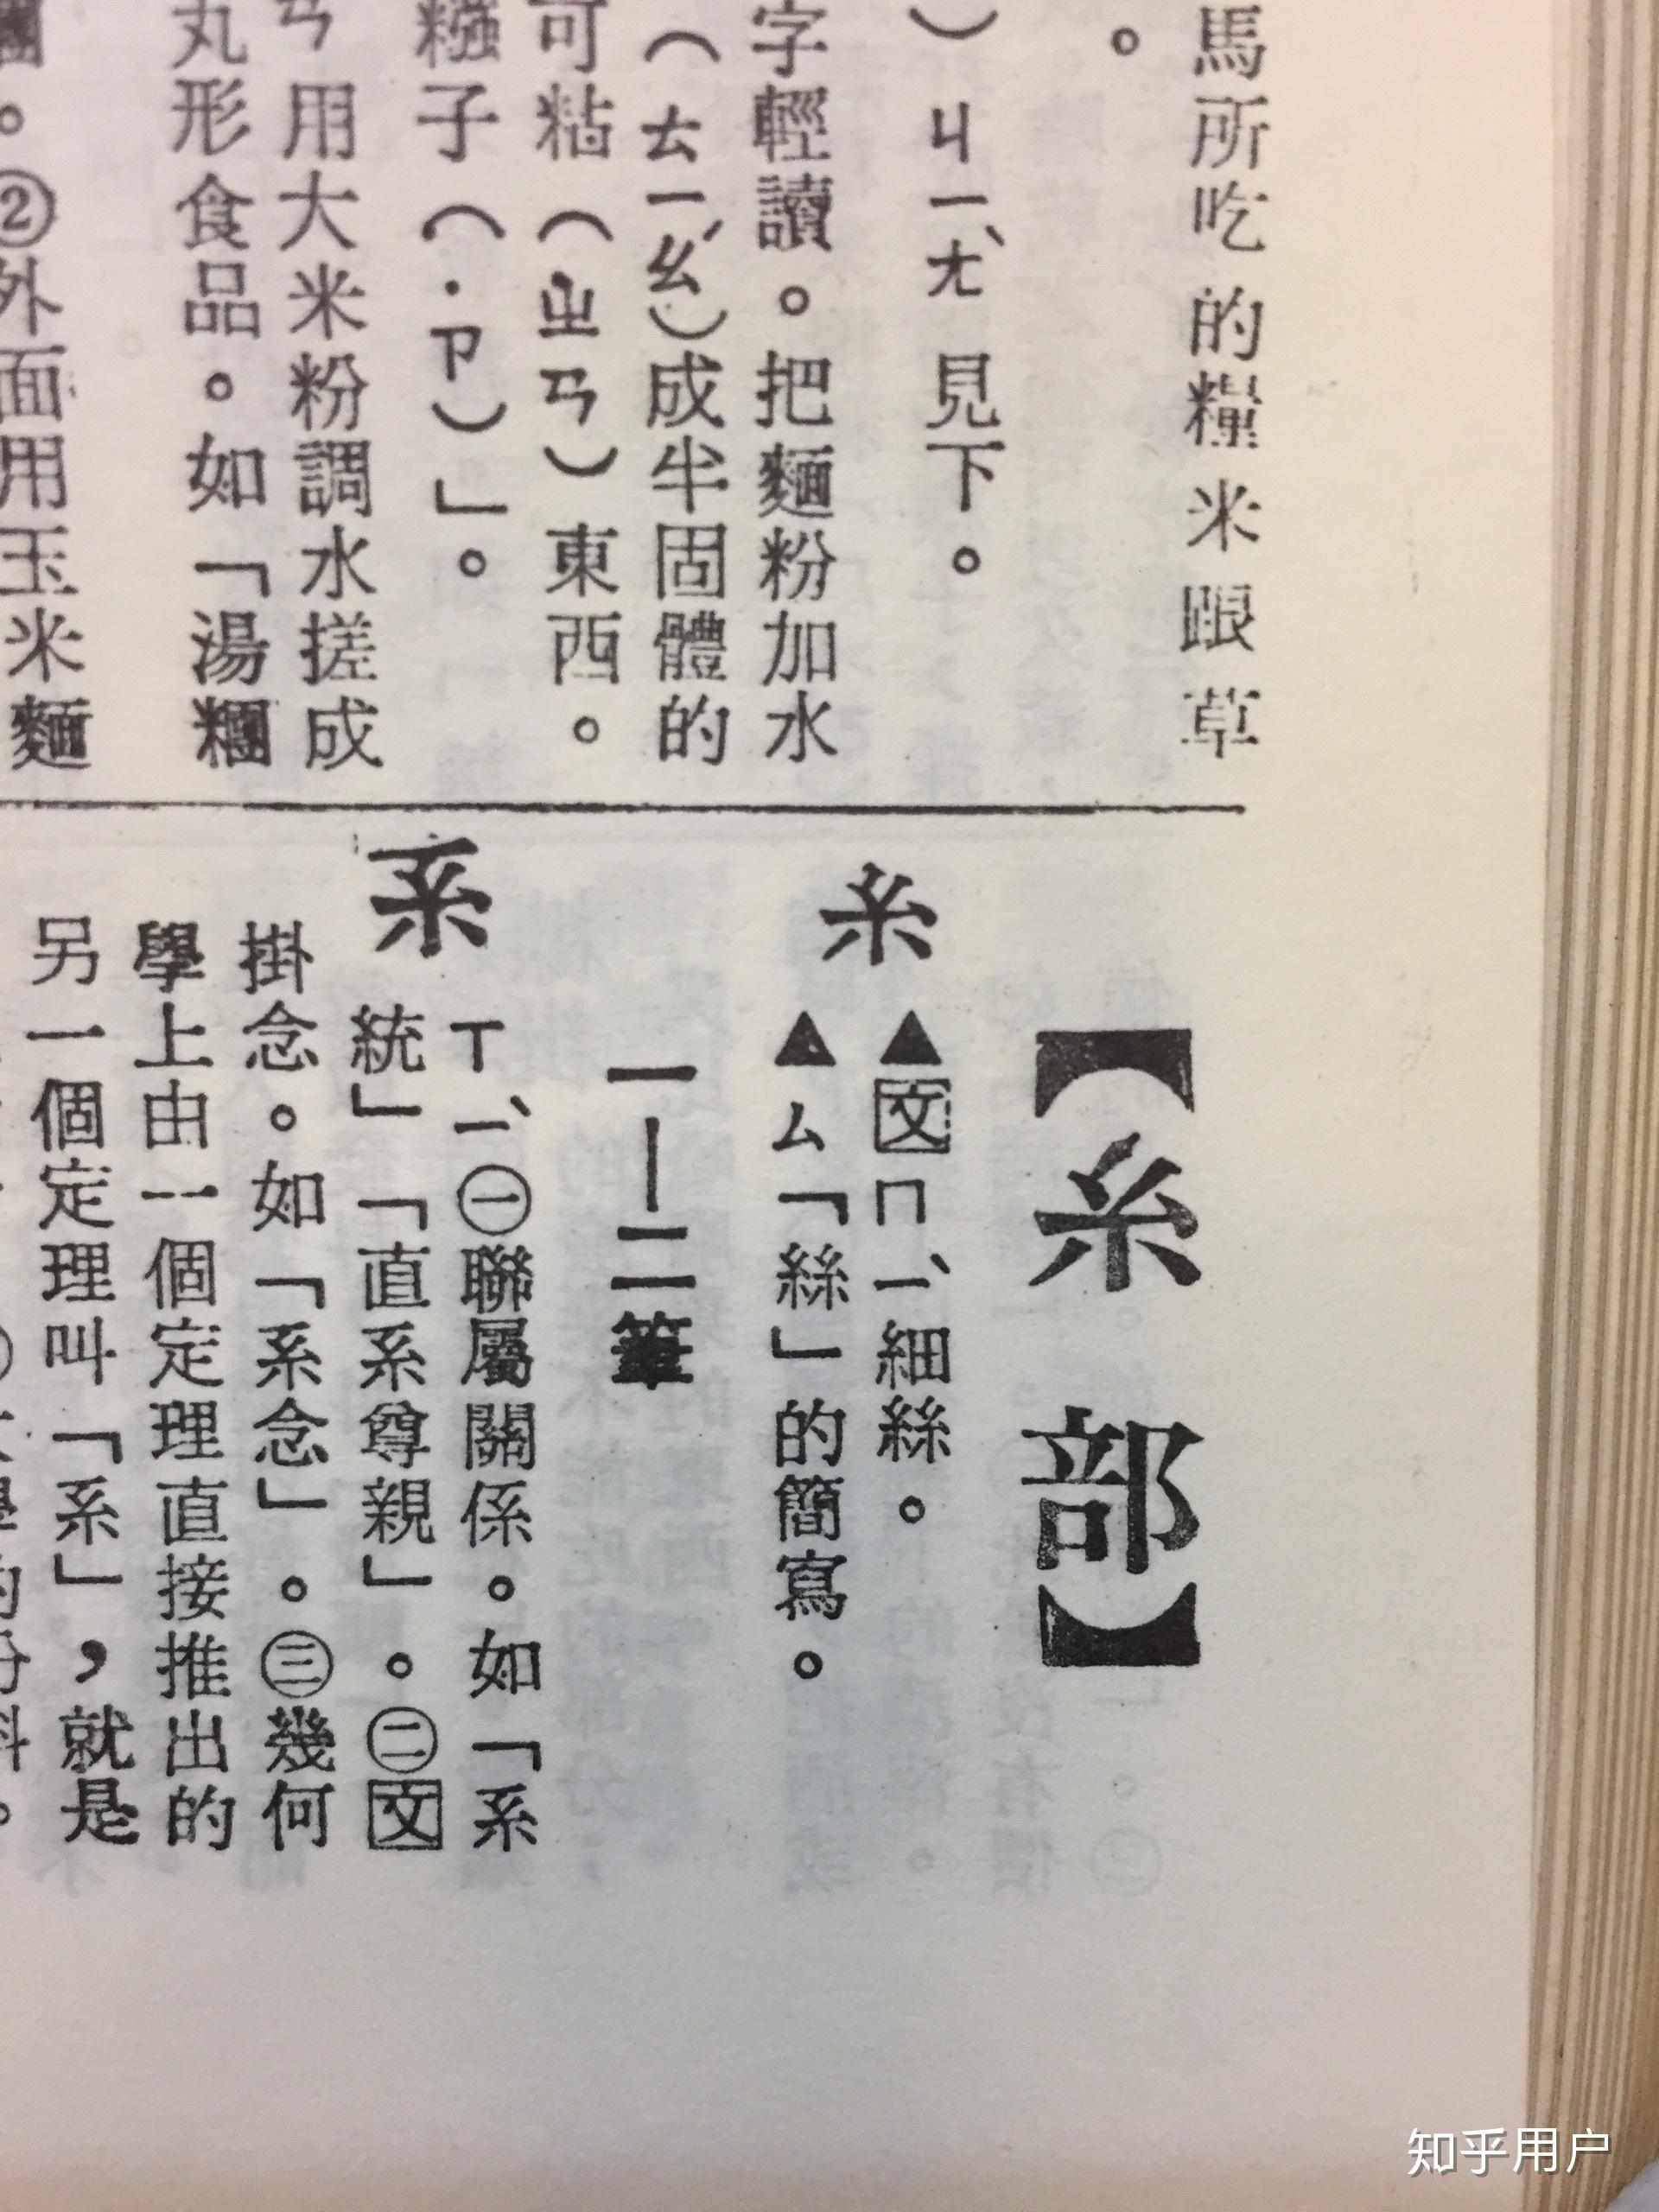 台湾人对汉字的误读,尤其是多音字、或由